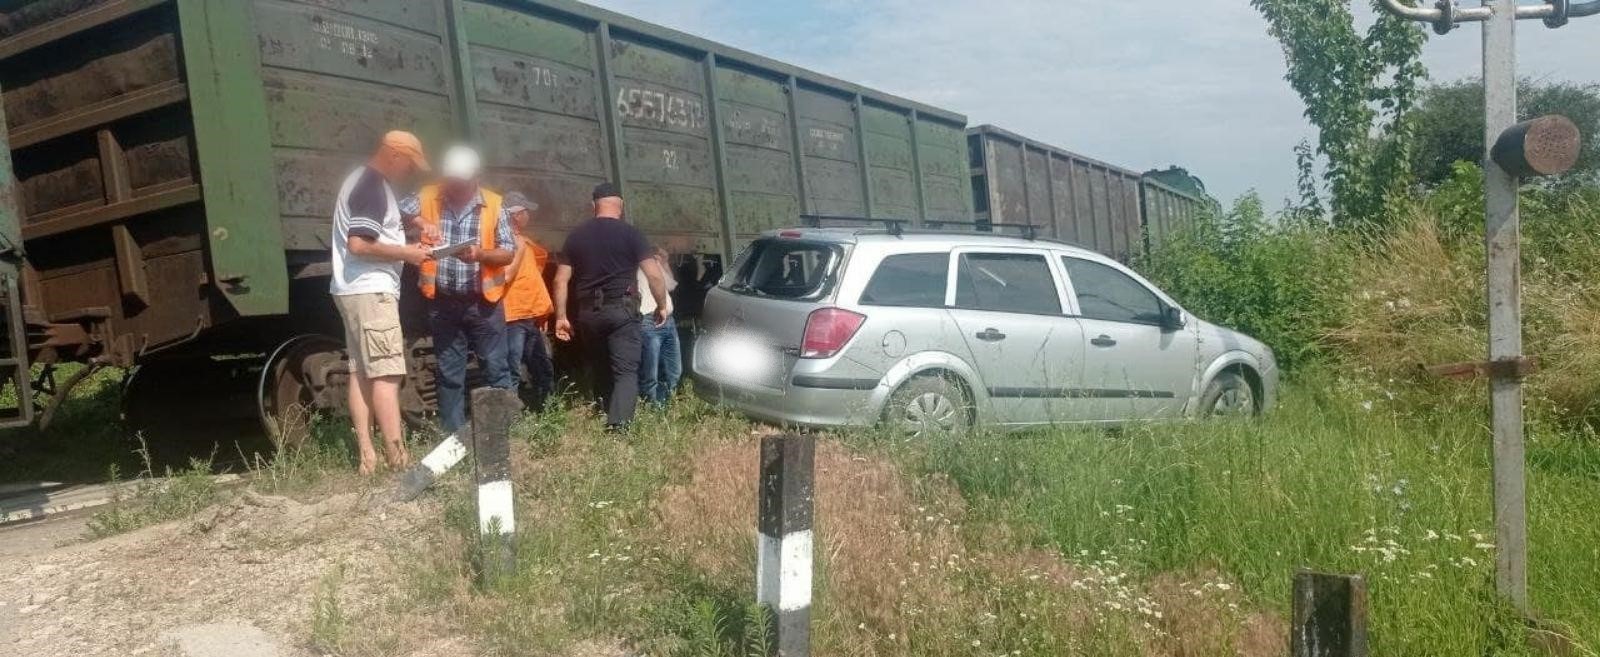 /VIDEO/ Două persoane au scăpat ca prin urechea acului, după ce mașina în care se aflau a fost lovită de o locomotivă în raionul Briceni